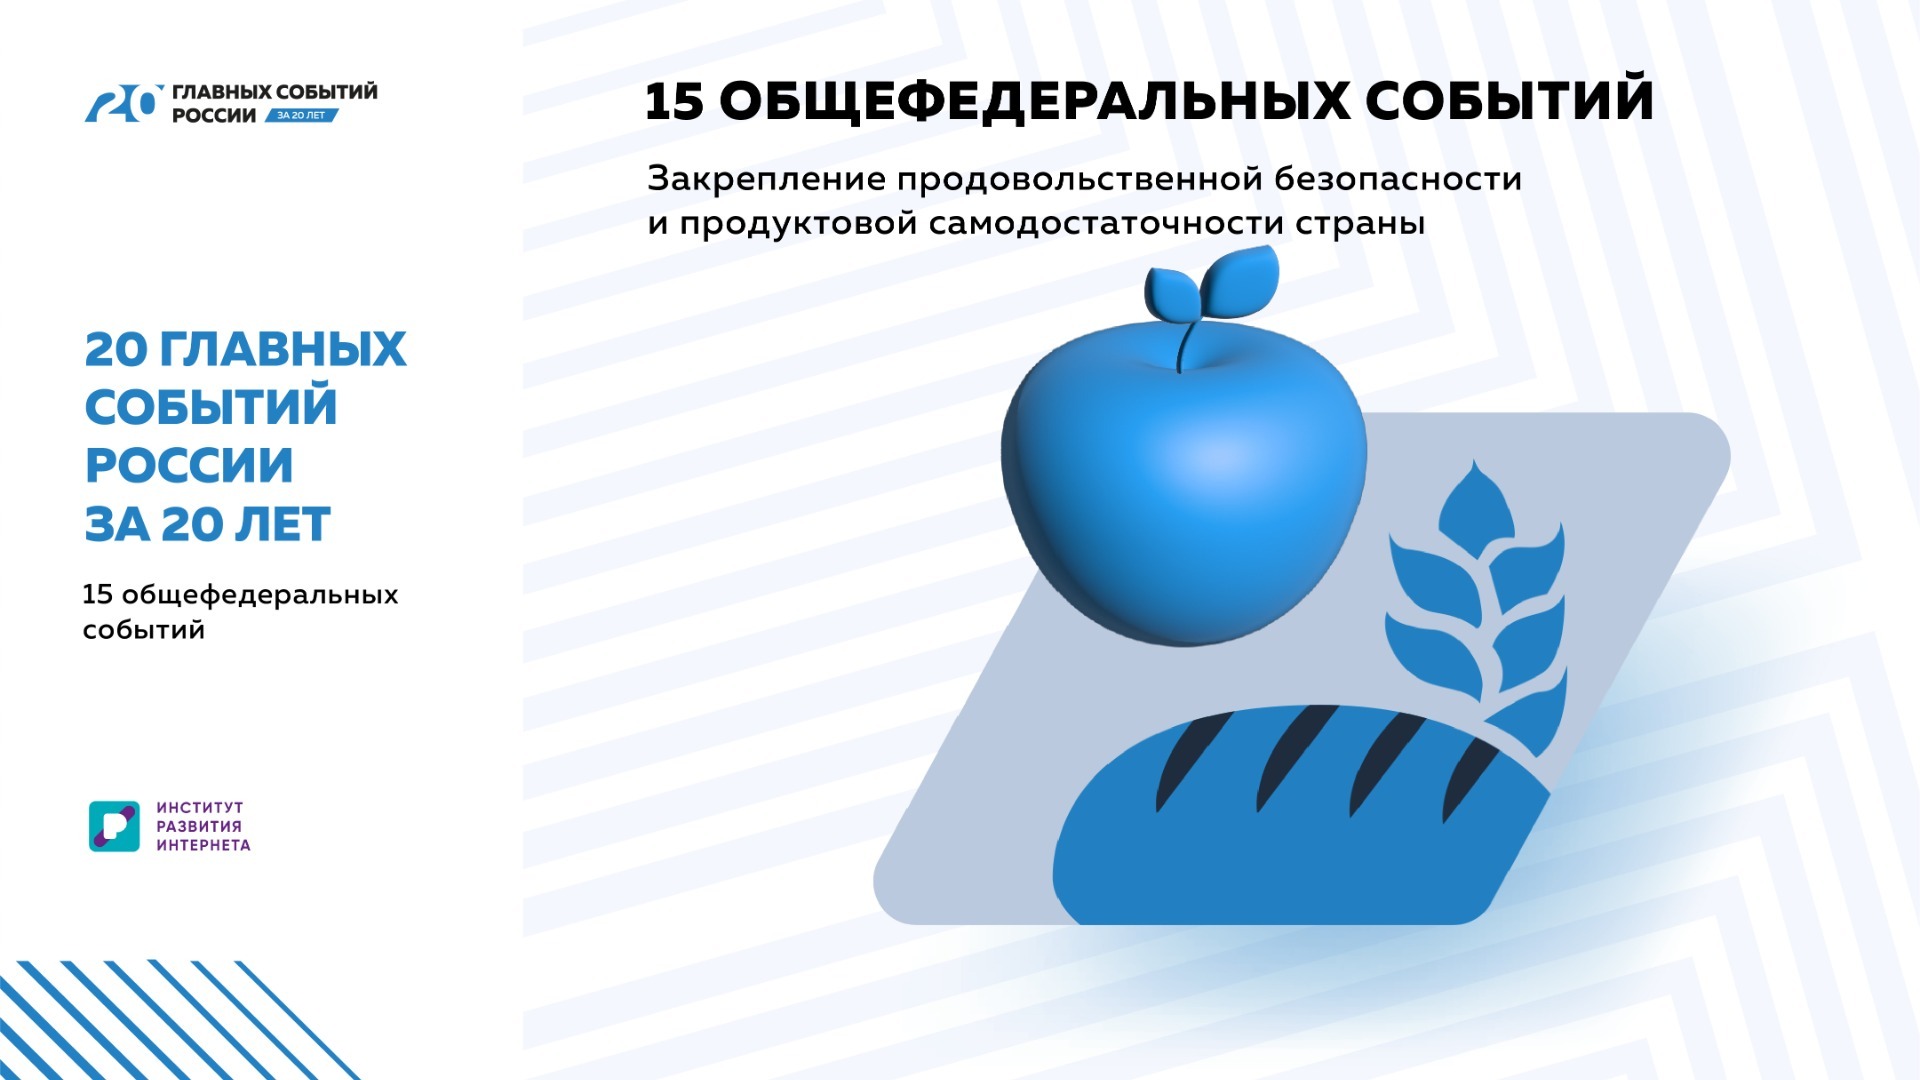 Продовольственную безопасность включили в «20 главных событий России за 20 лет»